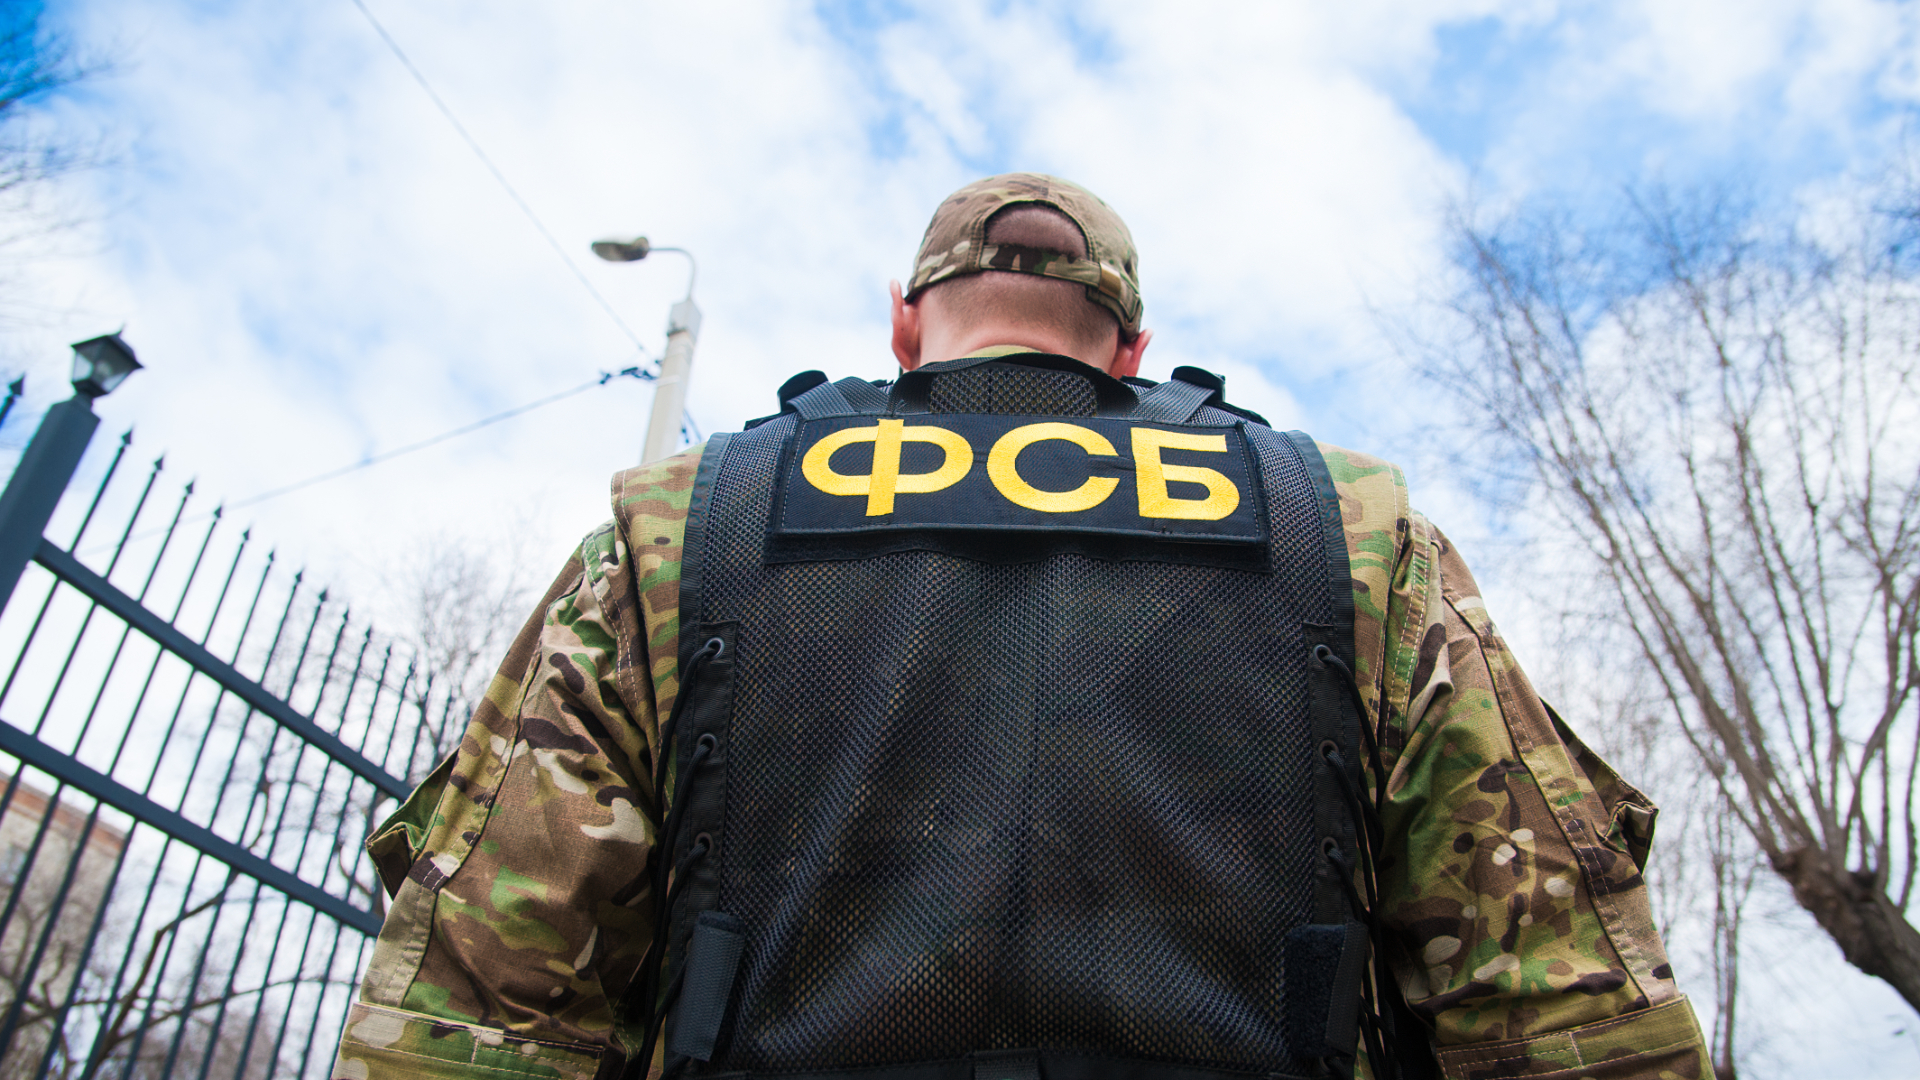 ФСБ задержала граждан Украины, которым 20 и 25 лет, за шпионаж в пользу ВСУ